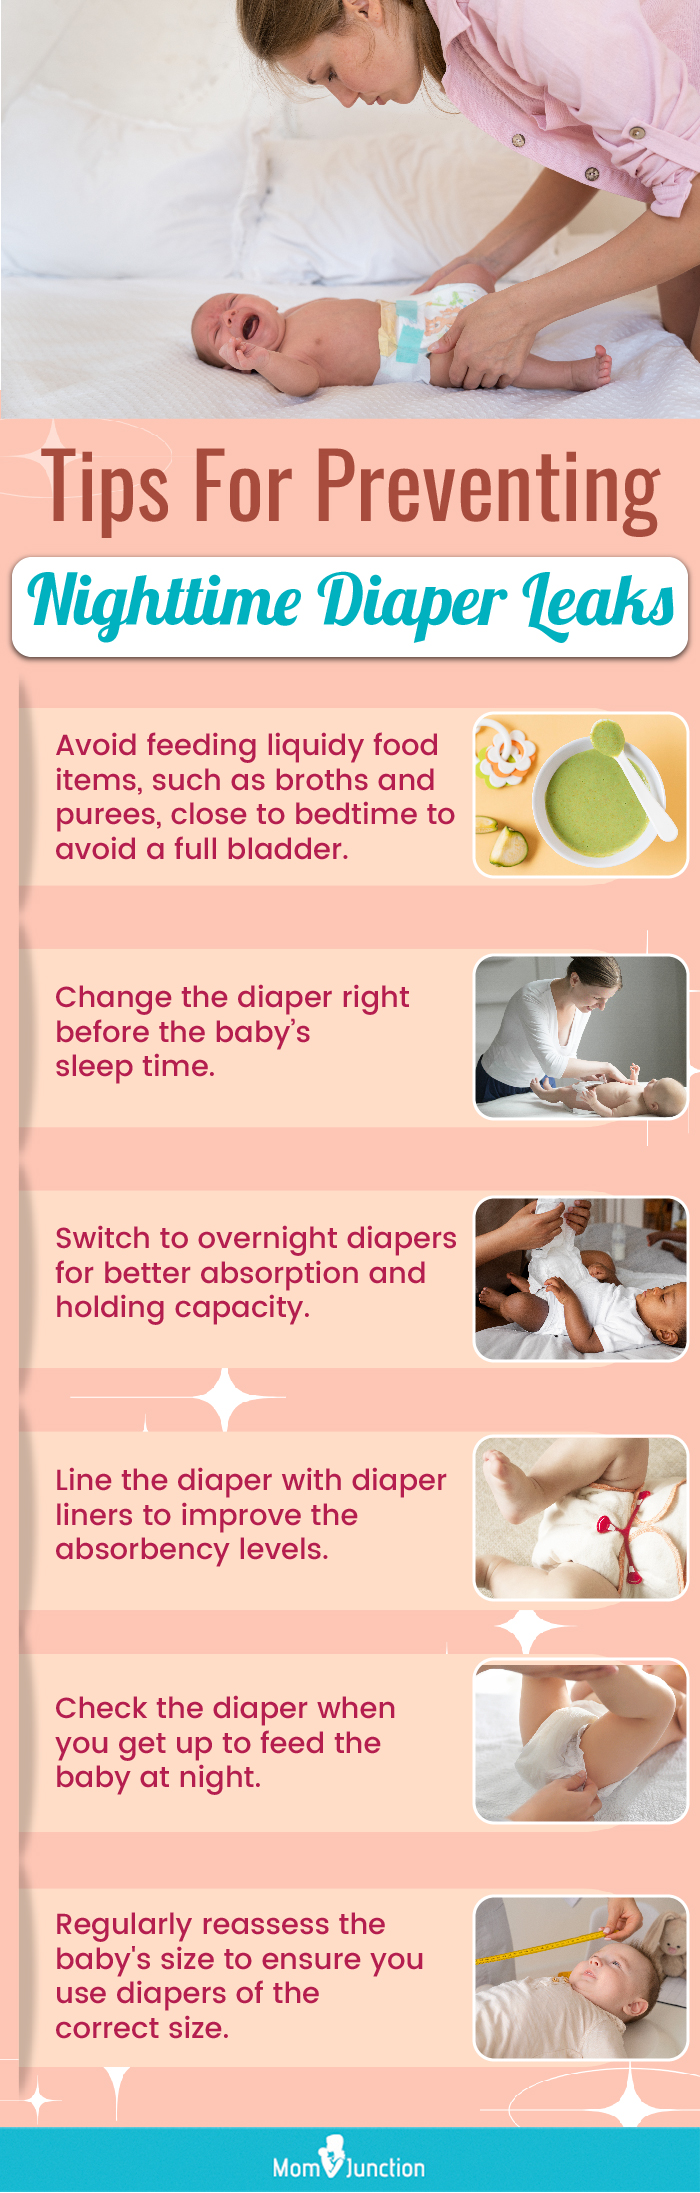 Tips For Preventing Nighttime Diaper Leaks (infographic)